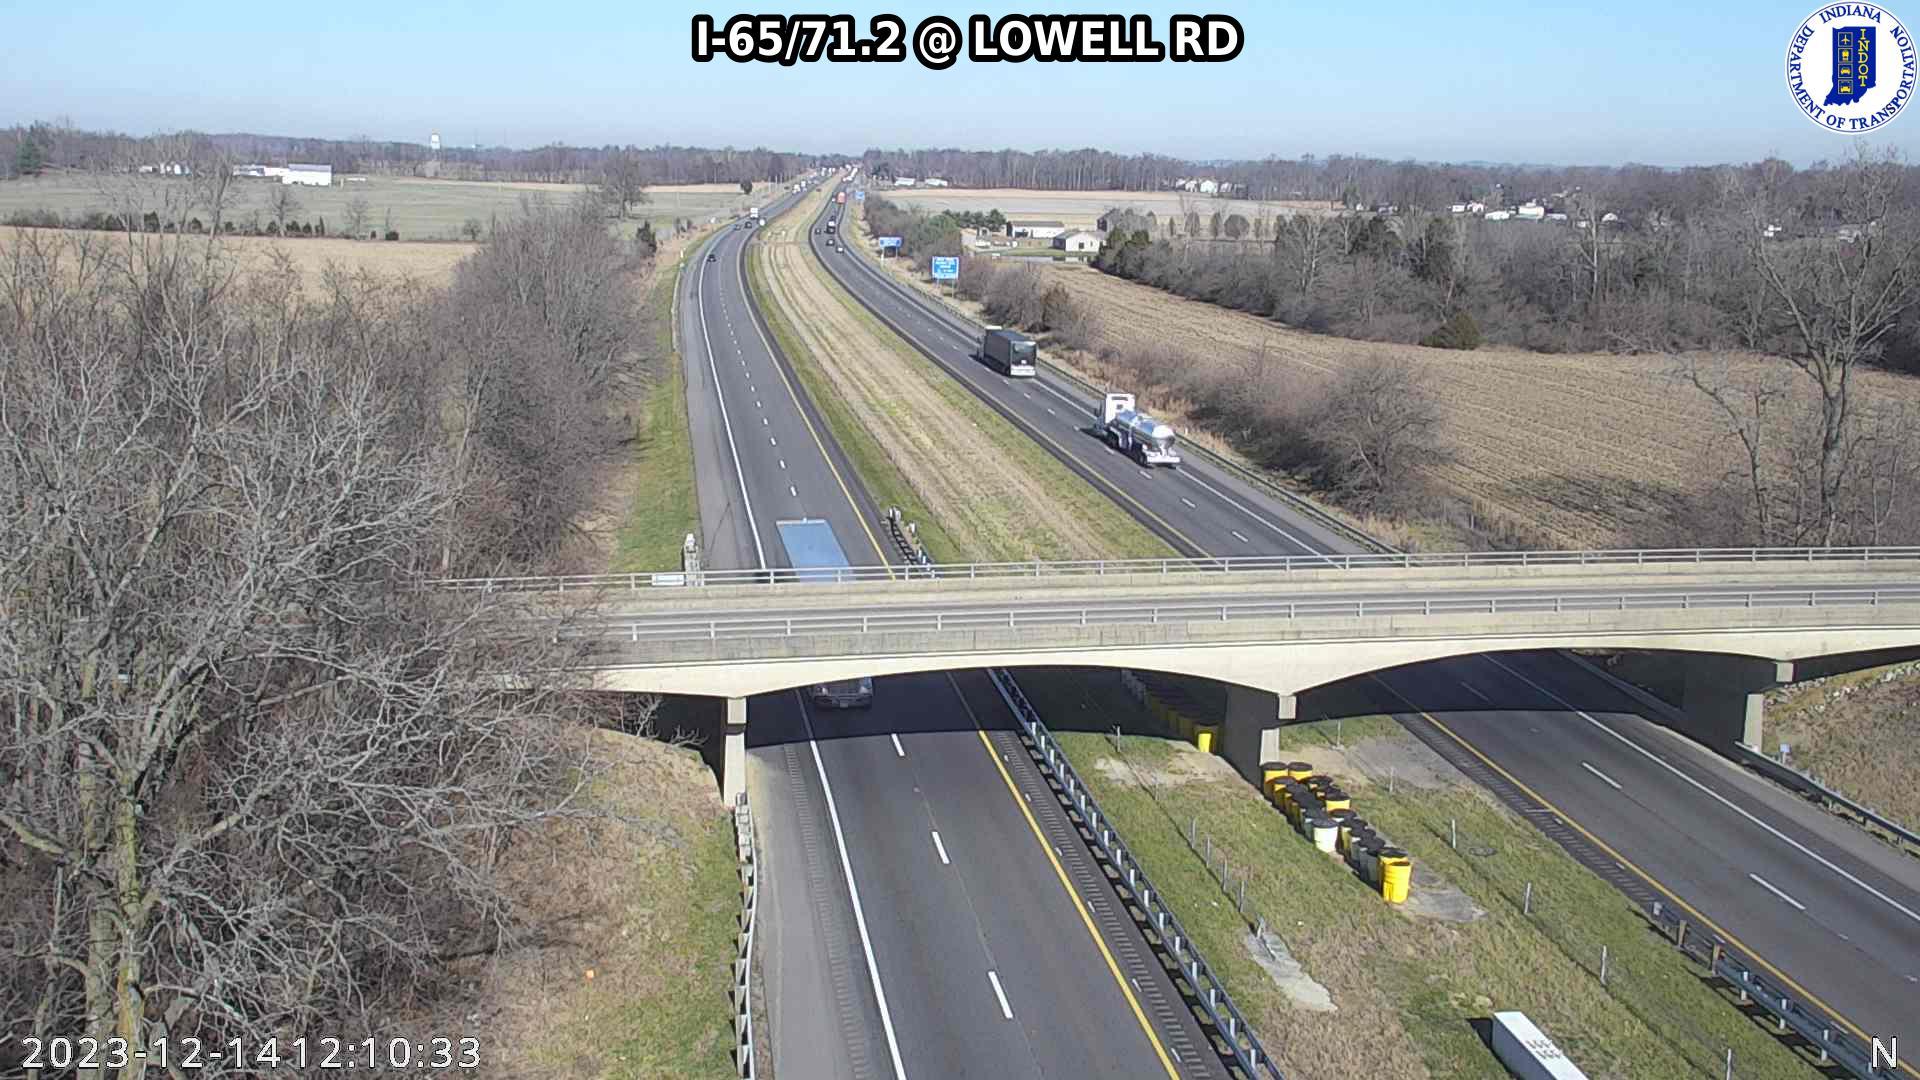 Traffic Cam Lowell: I-65: I-65/71.2 - Rd